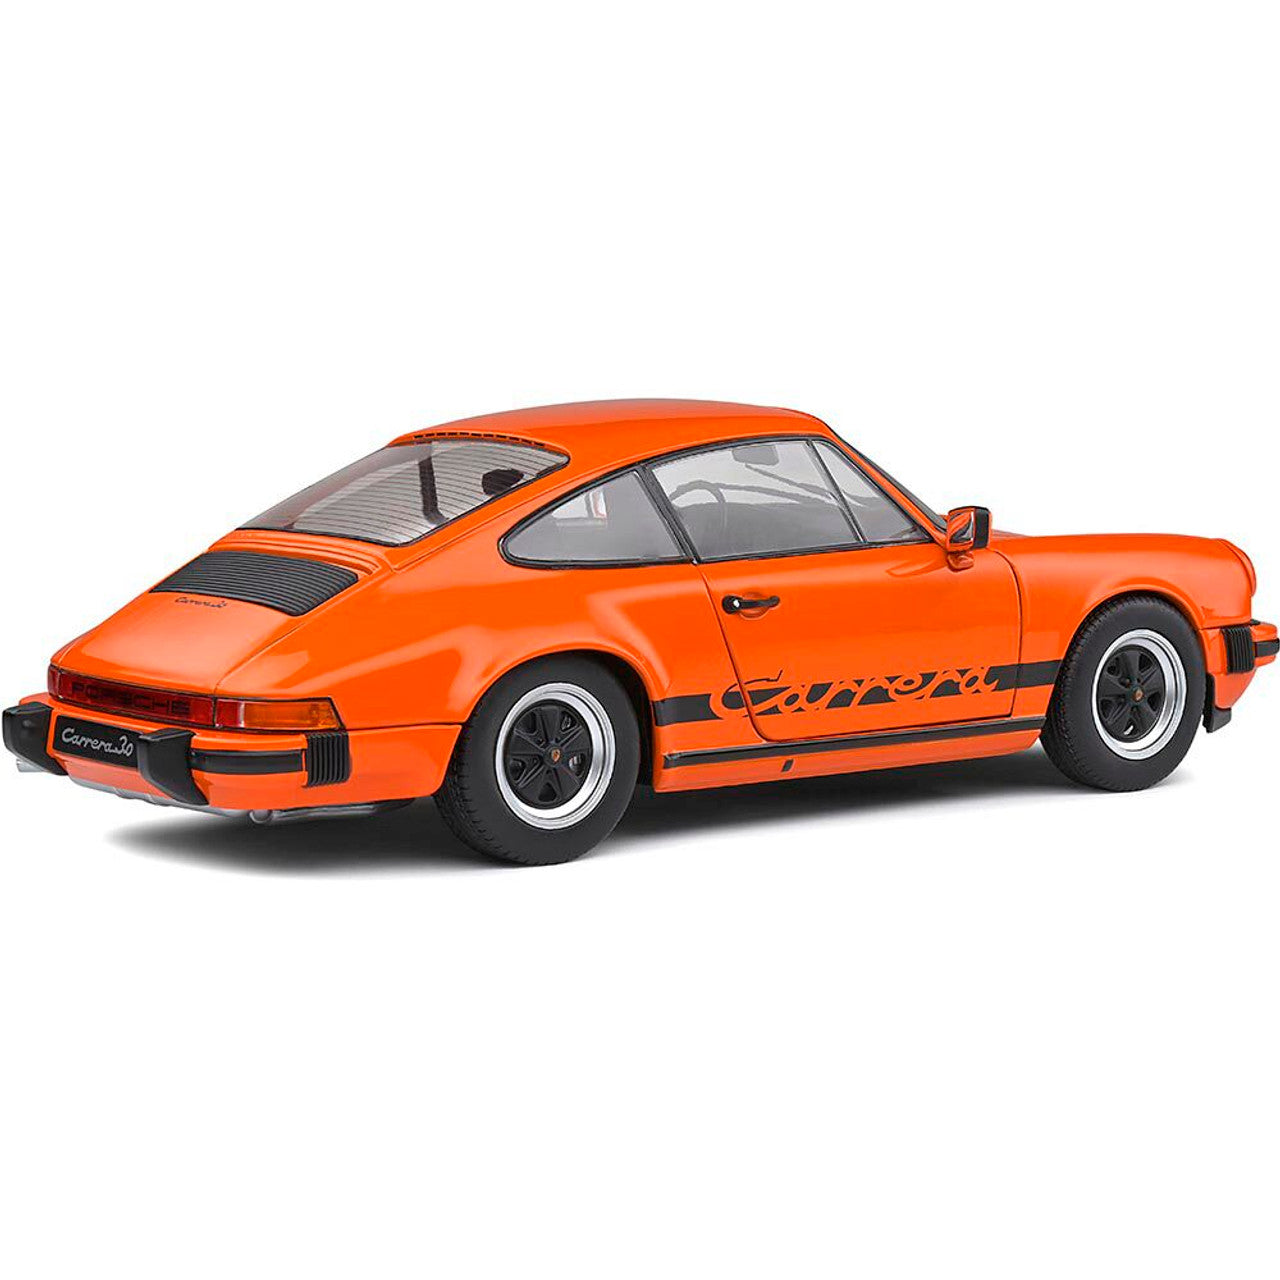 1970 Porsche 911 930 3.0 Carrera orange 1:18 Solido diecast Scale Model collectible